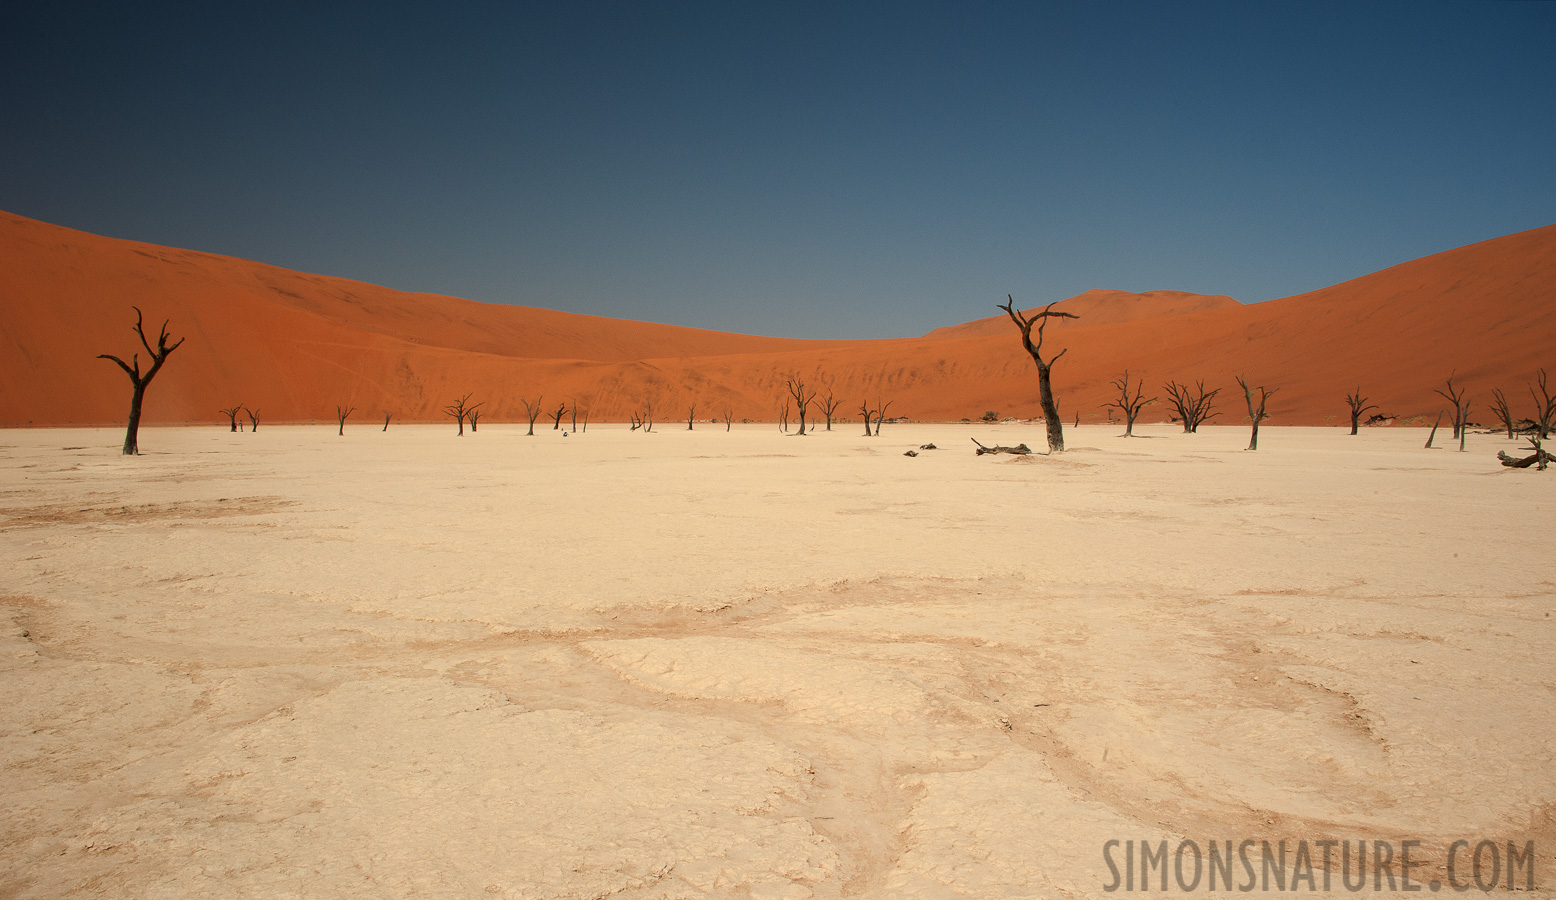 Namib-Naukluft National Park [28 mm, 1/100 sec at f / 22, ISO 400]